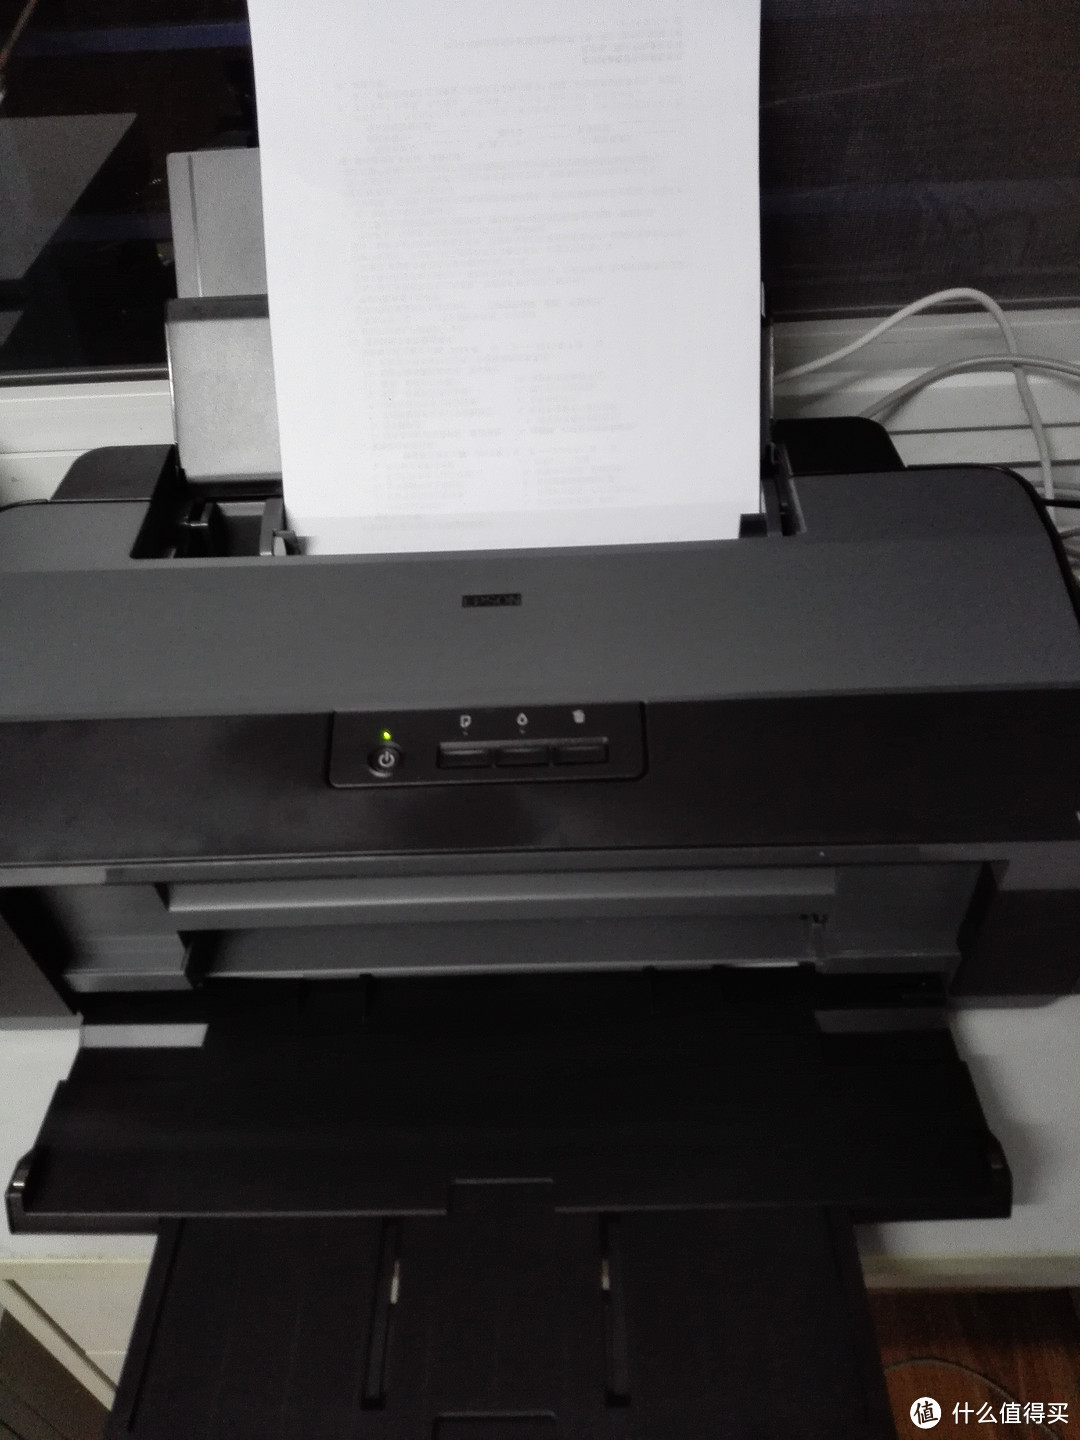 EPSON 爱普生 L1300 墨仓式宽幅喷墨打印机 简晒